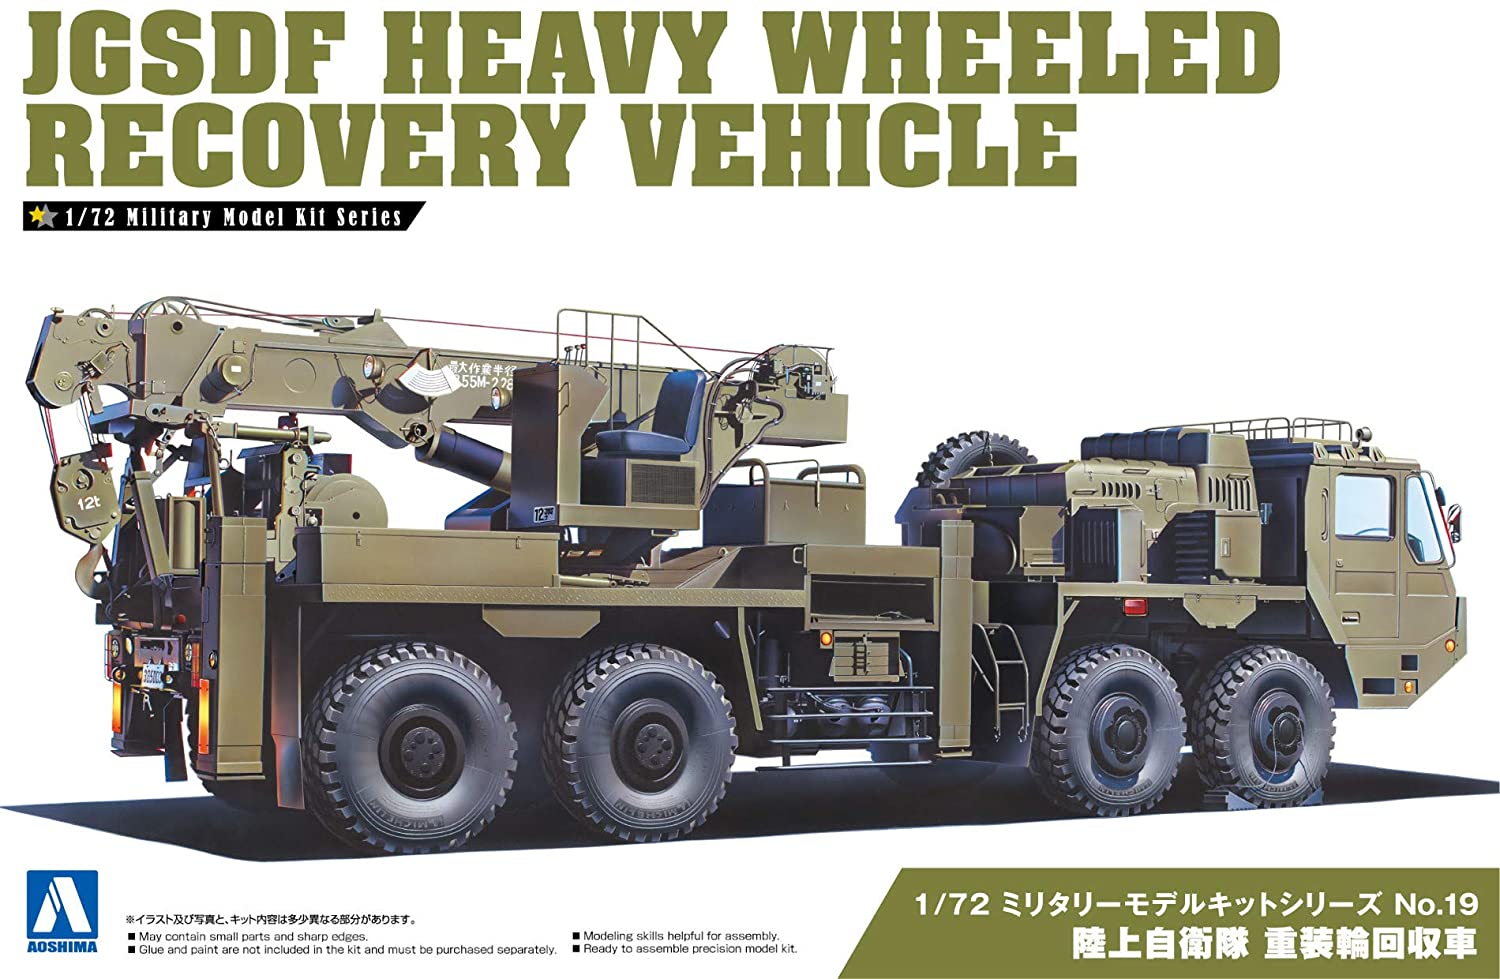 JGSDF Heavy Wheeled Recovery Vehicle